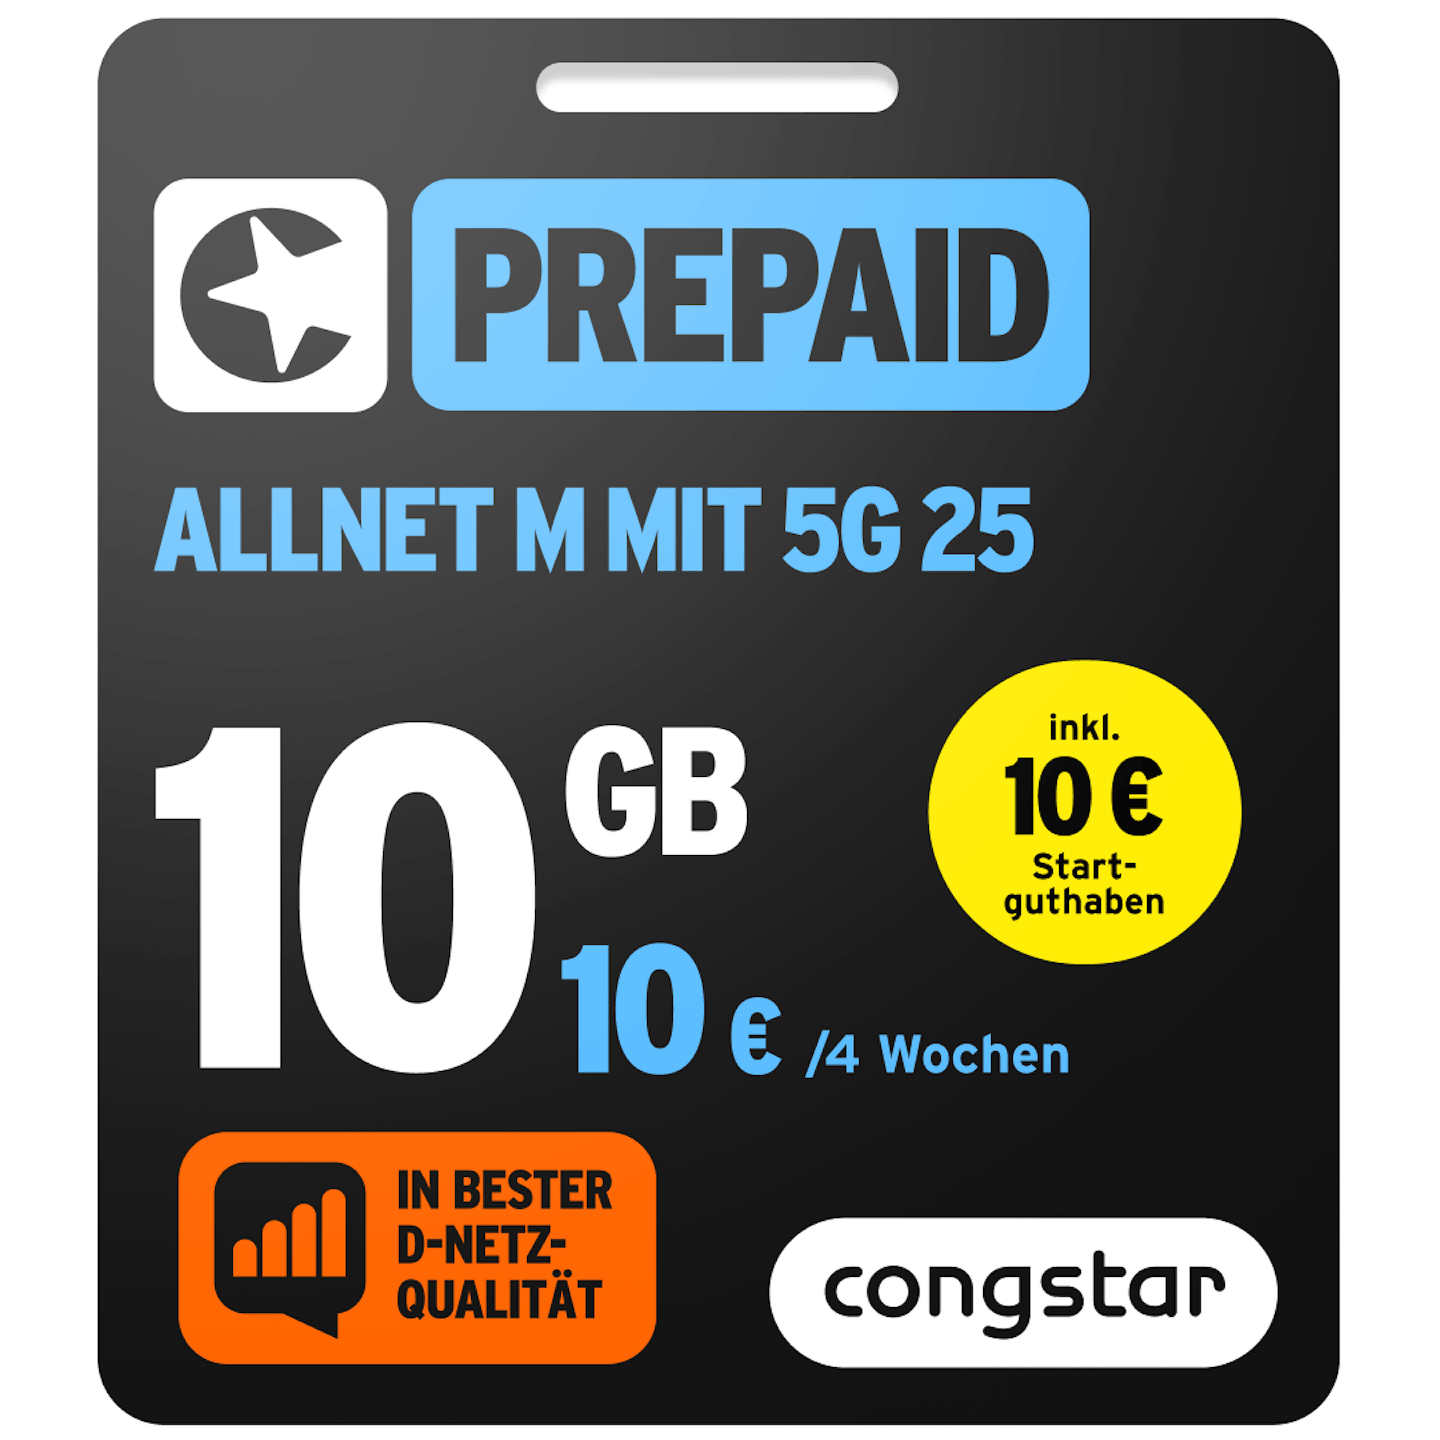 Bild der Verpackung des Prepaid Allnet M mit 5G 25